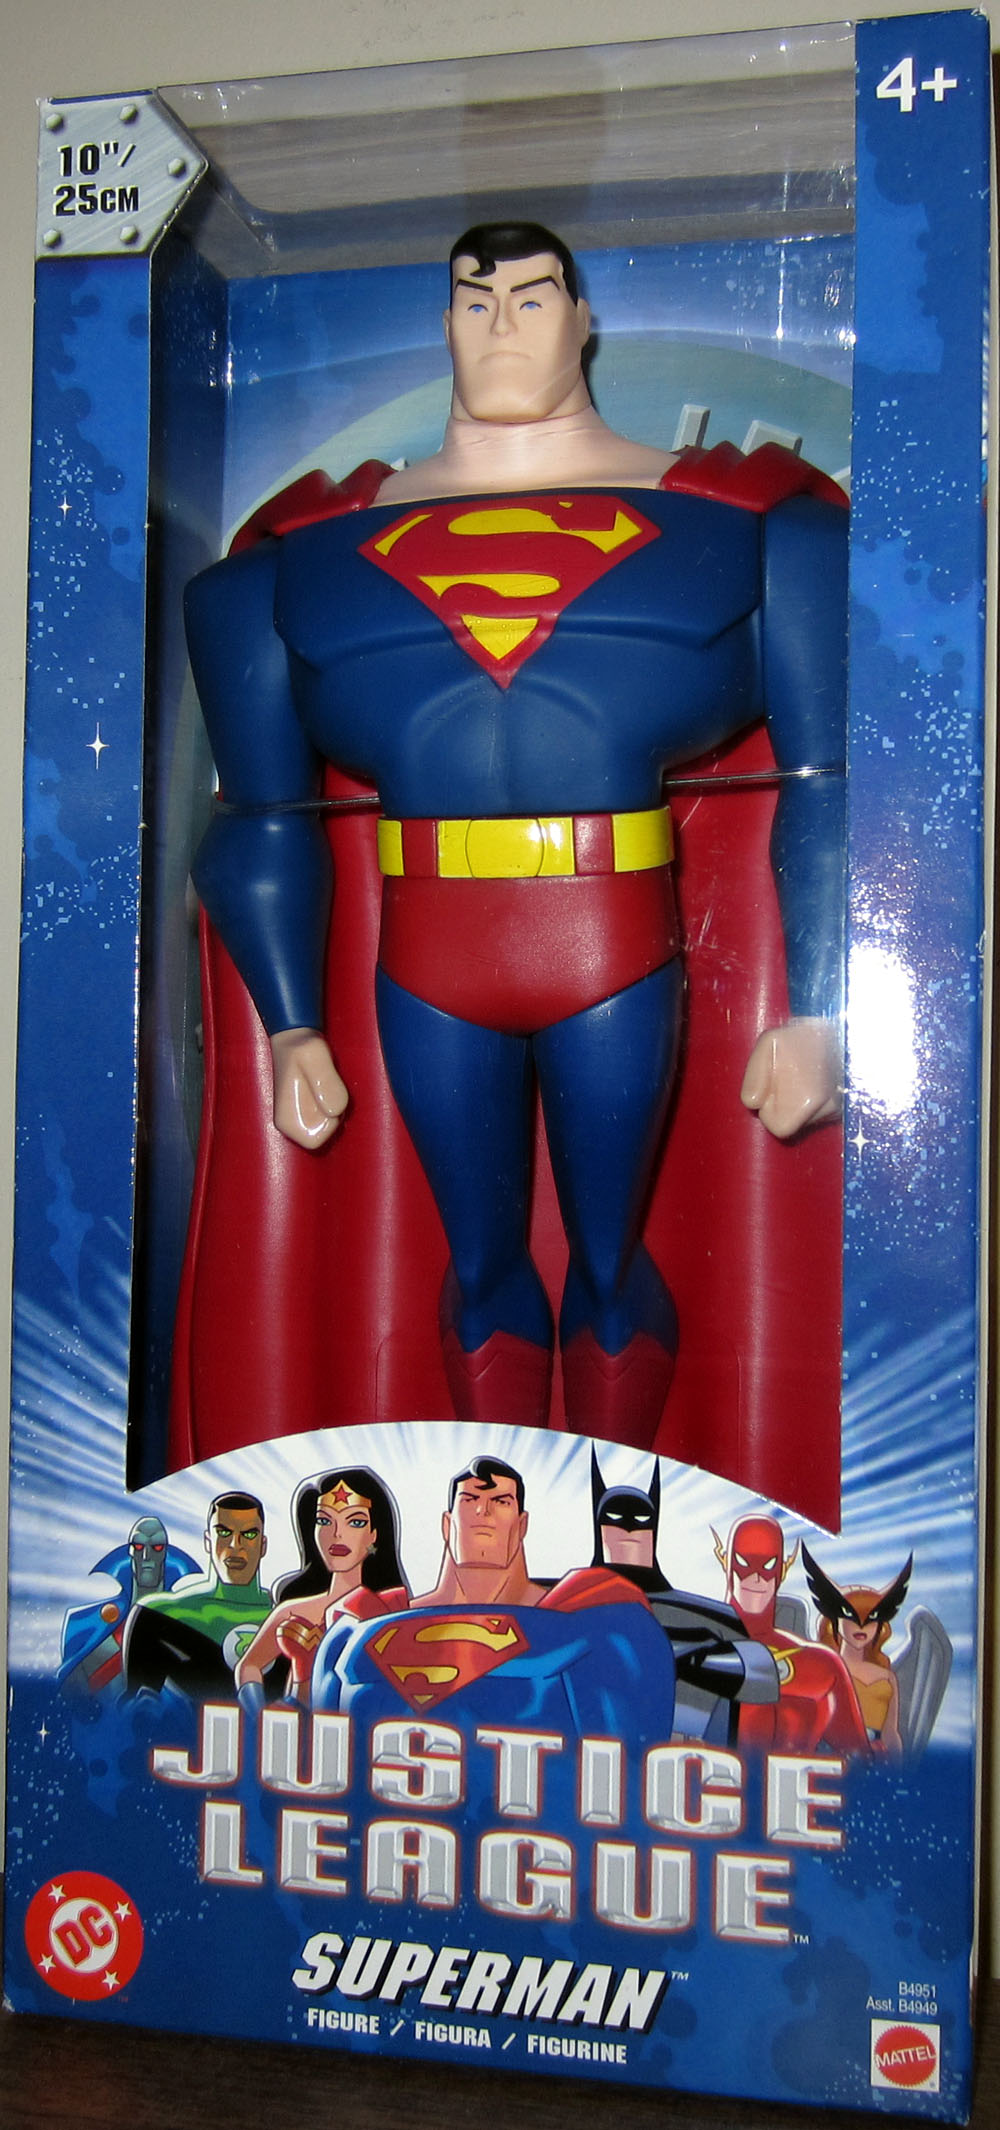  Mattel Justice League Superman Figure : Toys & Games